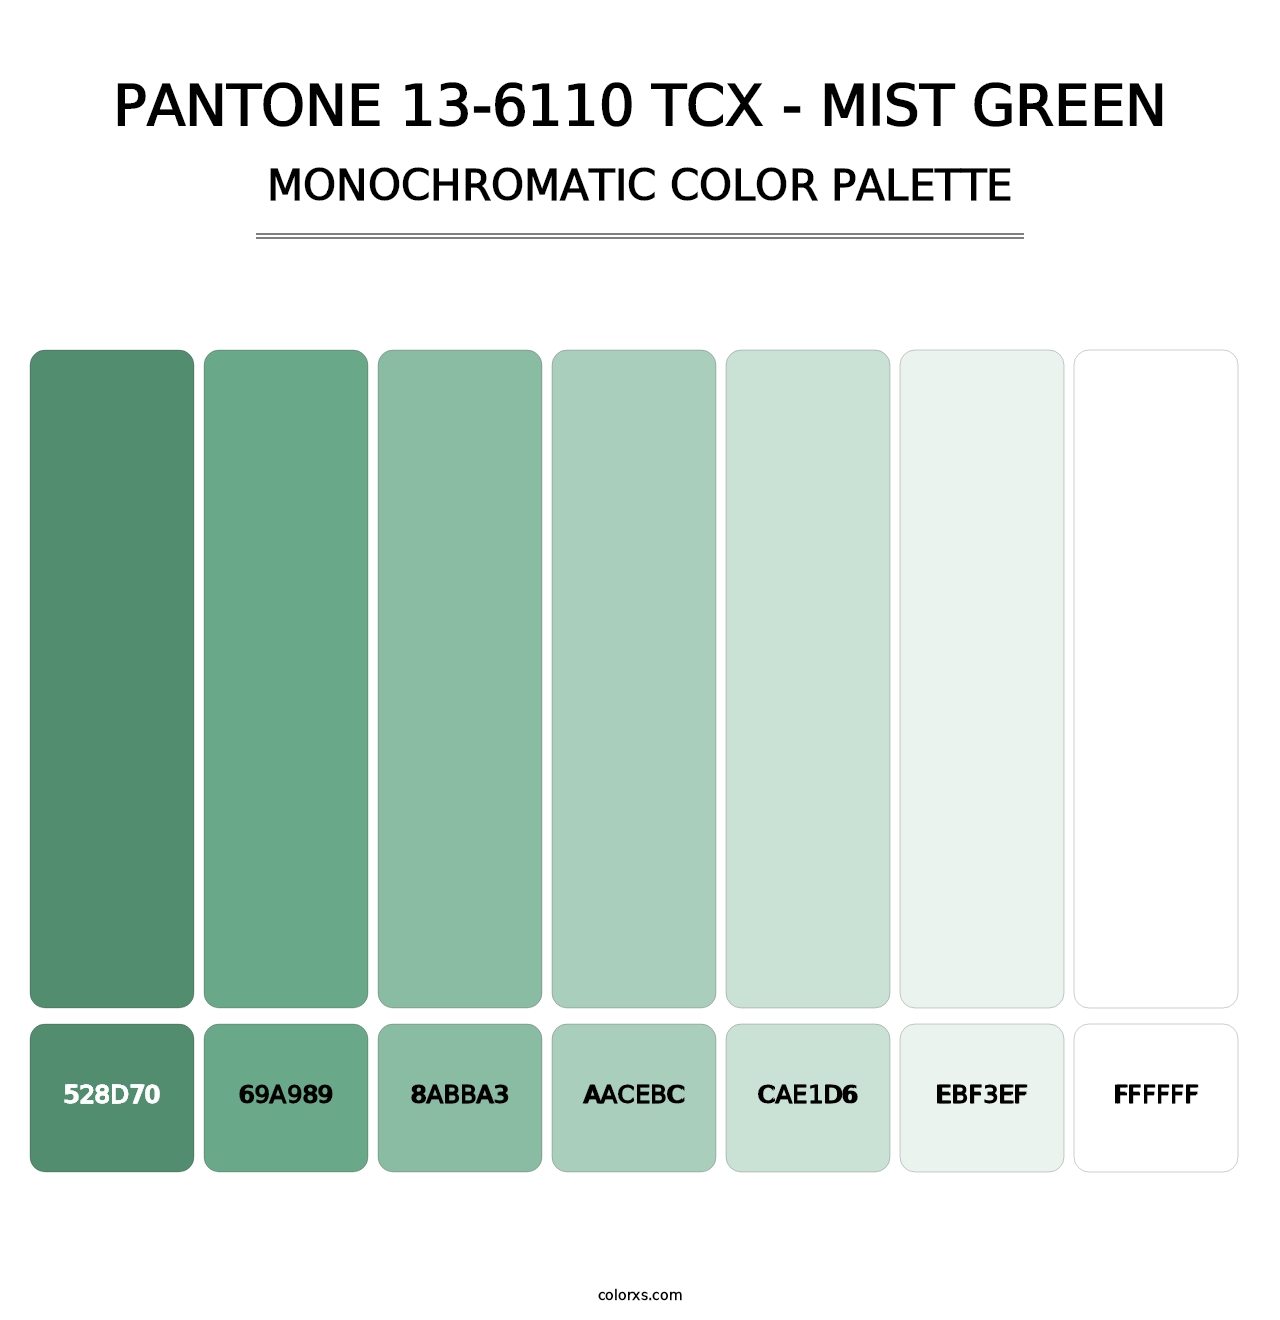 PANTONE 13-6110 TCX - Mist Green - Monochromatic Color Palette